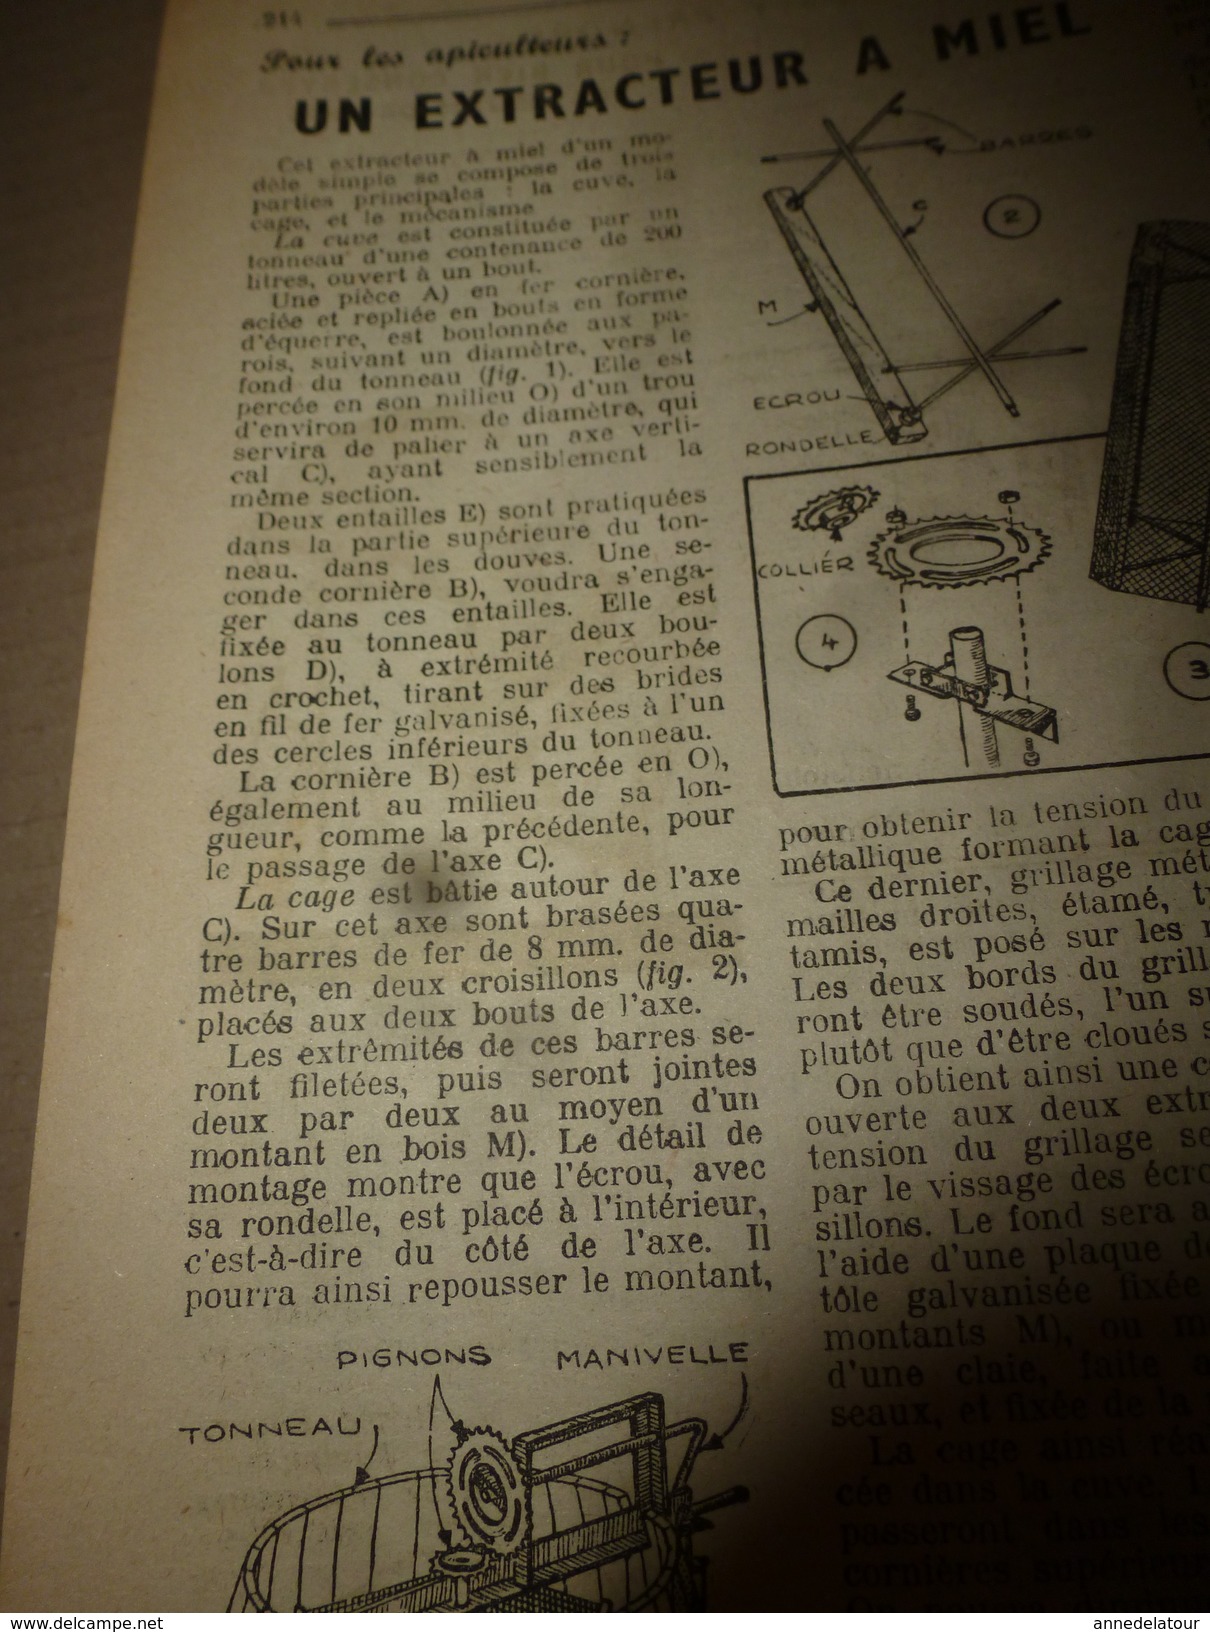 1950 TLSD : Comment ->Tandem transformable;Moteur-jouet;Girouette animée;Football de Table;Béton armé;Extract.-miel;etc